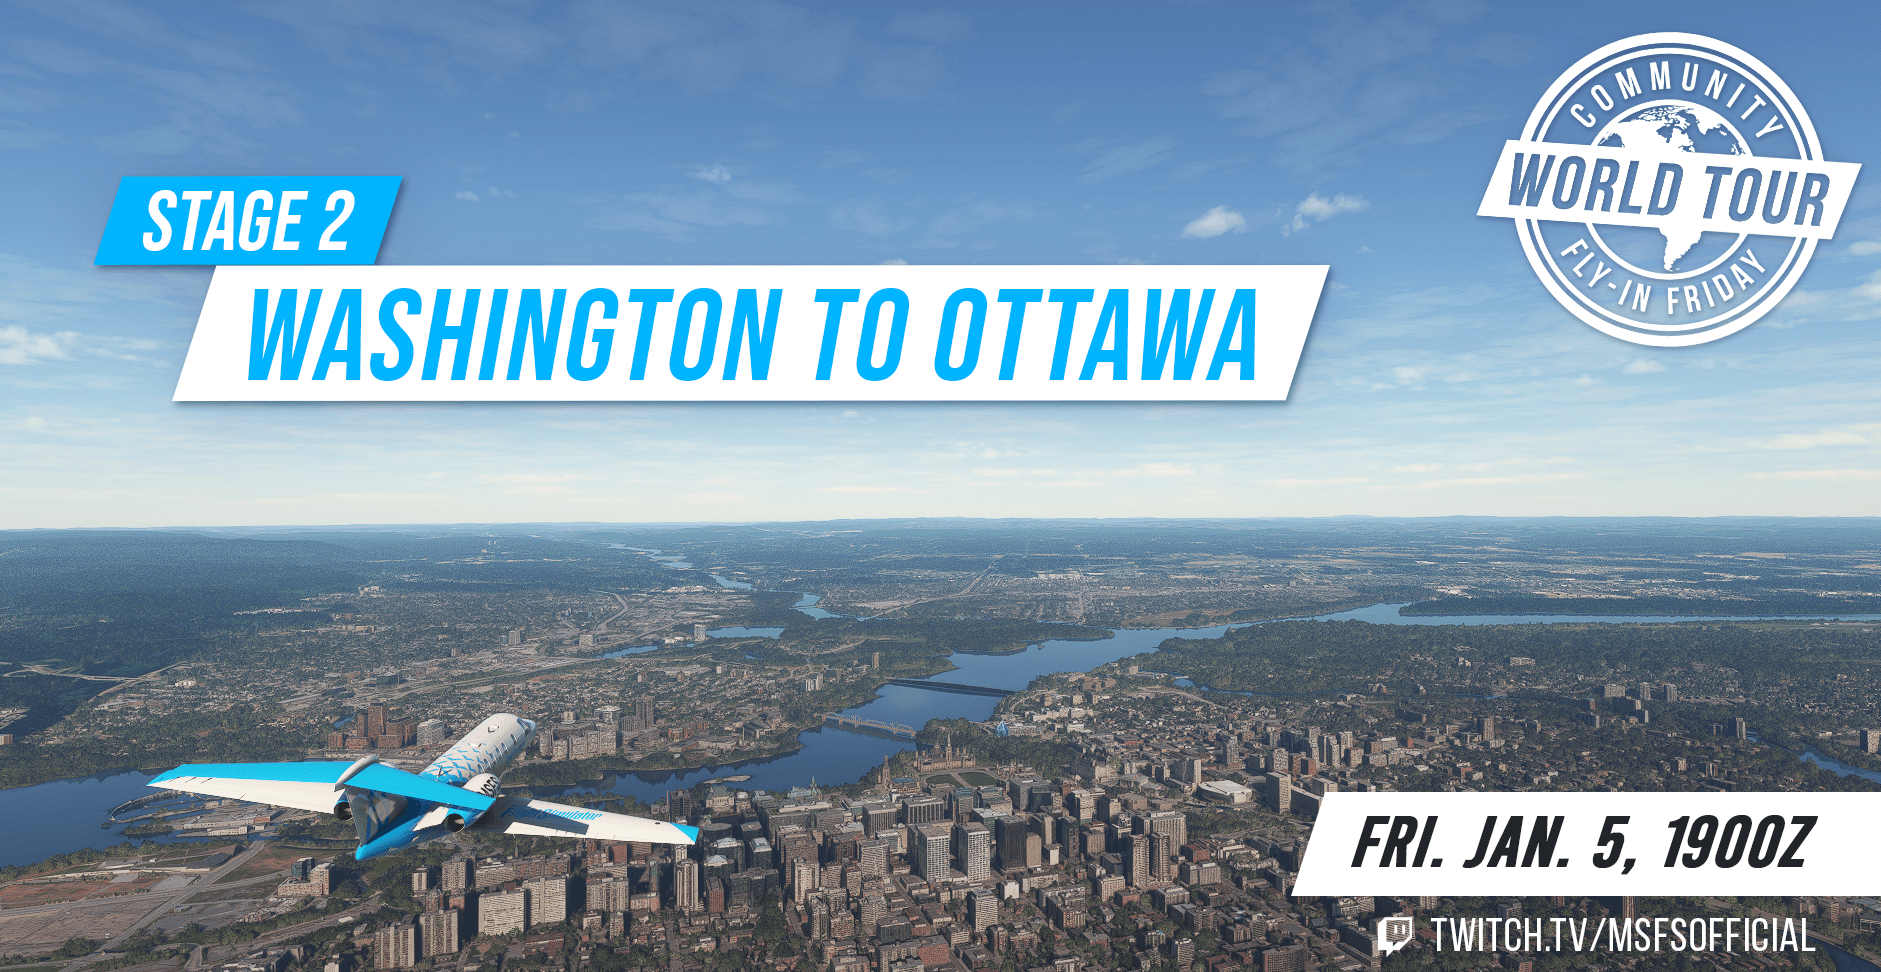 World Tour Stage 2 - Washington to Ottawa